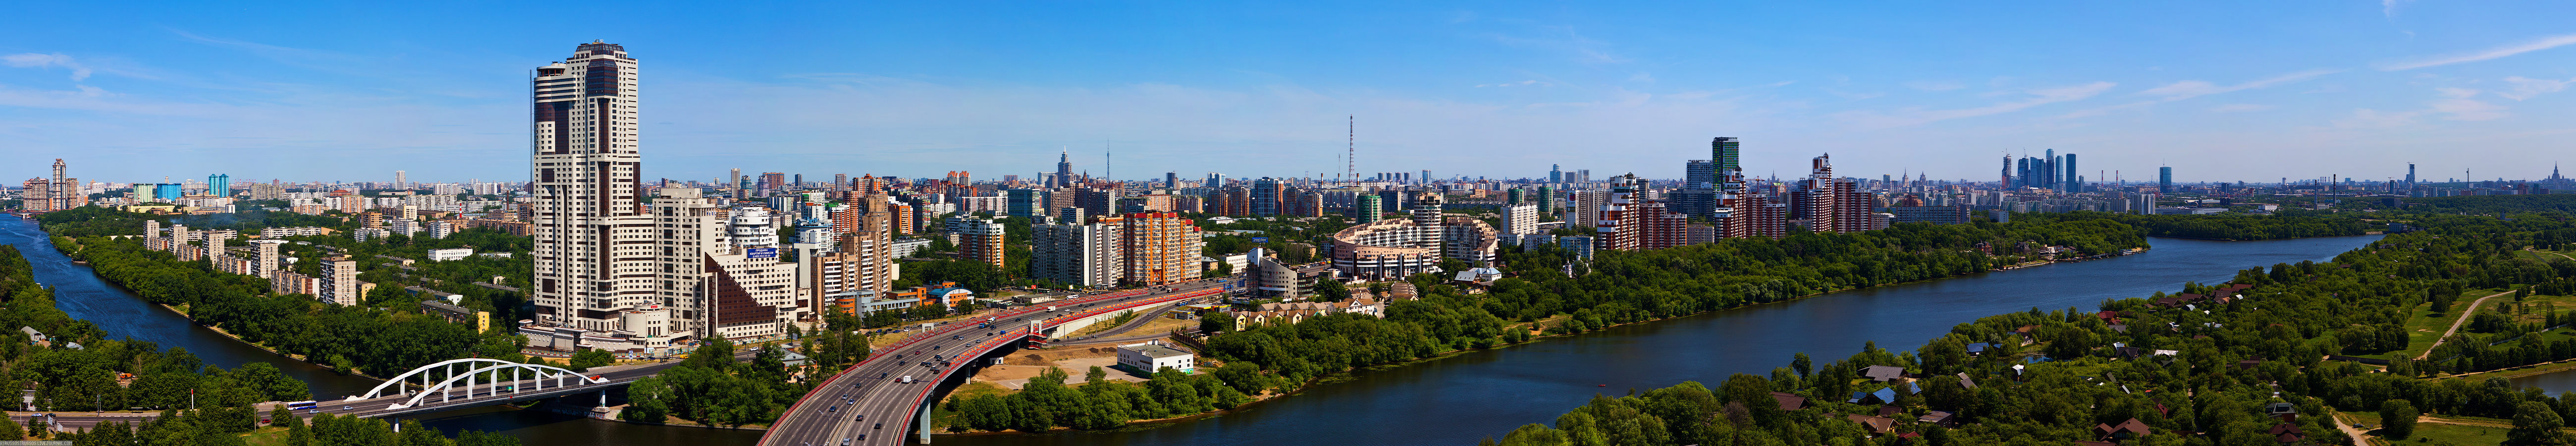 Панорама какая. Панорама города Москва. Панорамные снимки города. Широкая панорама. Панорама города вытянутая.